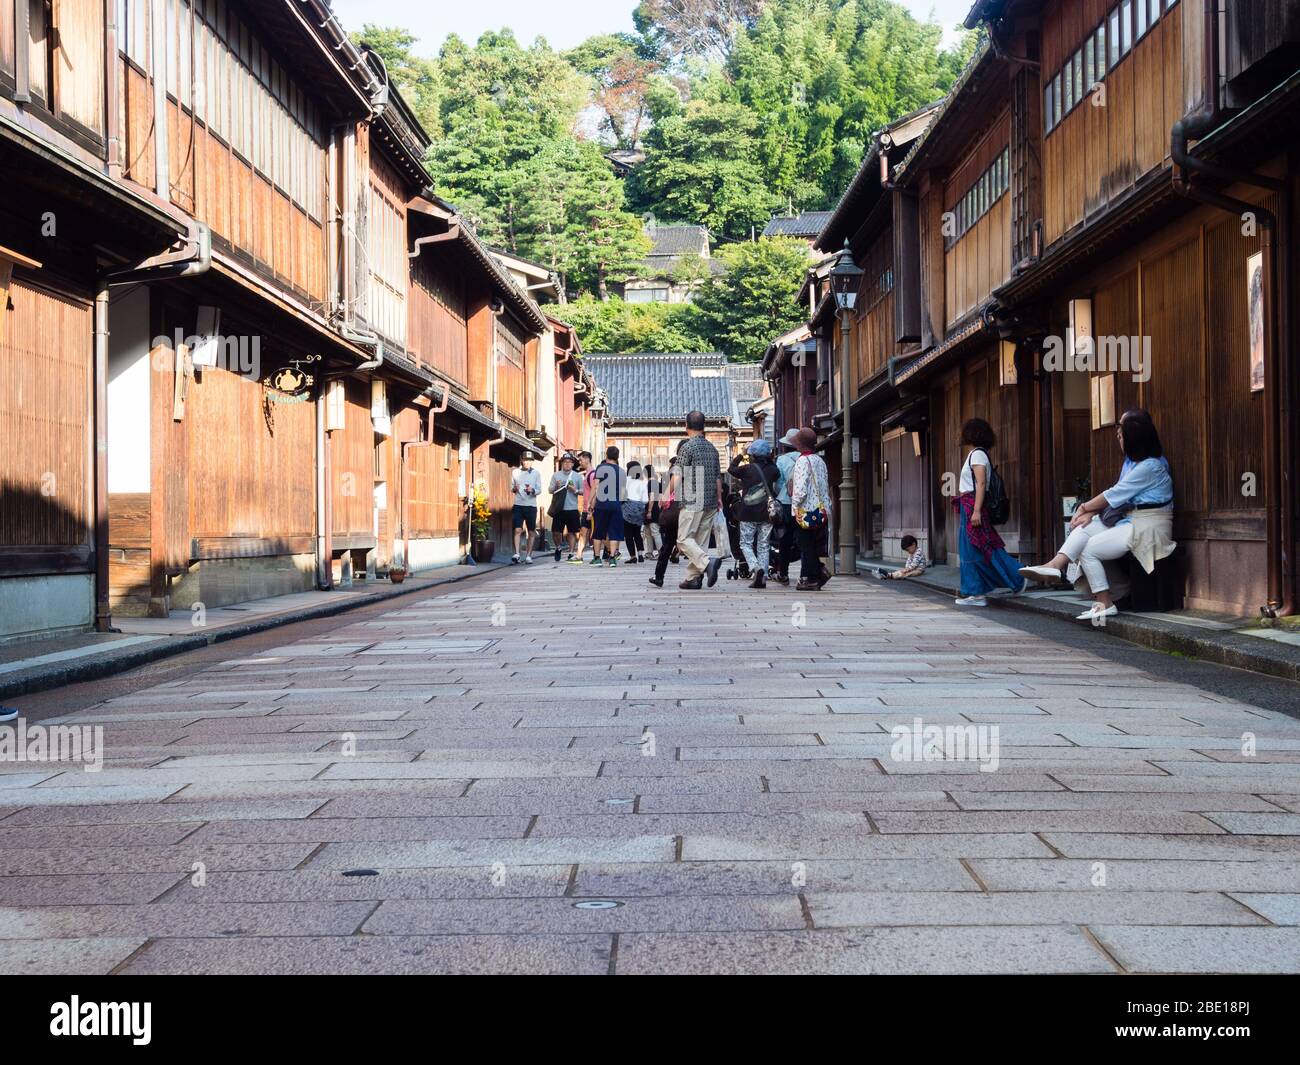 Kanazawa, Japan - 28. September 2015: Touristen, die durch die Reihen traditioneller japanischer Häuser im alten Geisha-Viertel Higashi Chaya schlendern Stockfoto